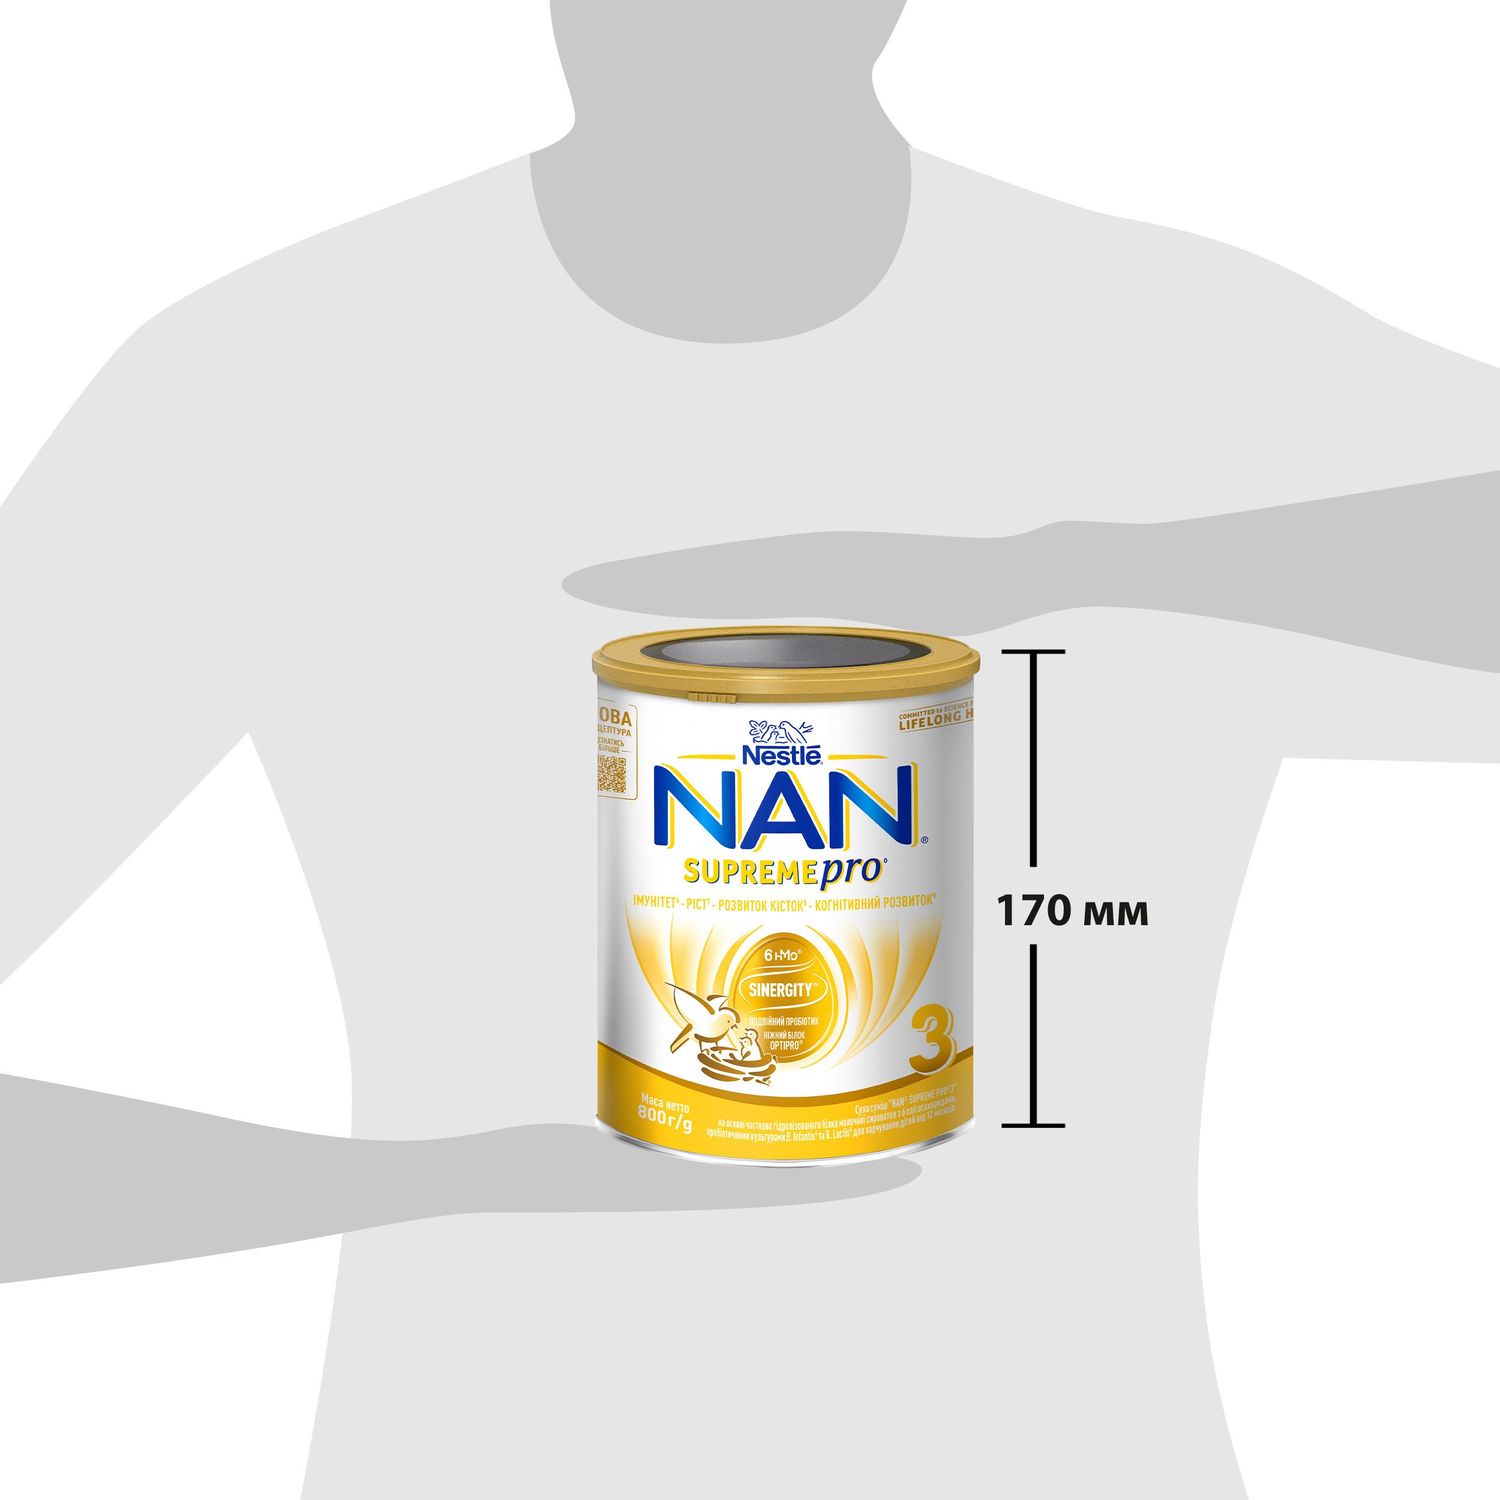 Суха суміш NAN 3 Supreme Pro з 6 олігосахаридами та подвійним пробіотиком для харчування дітей від 12 місяців 800 г - фото 9